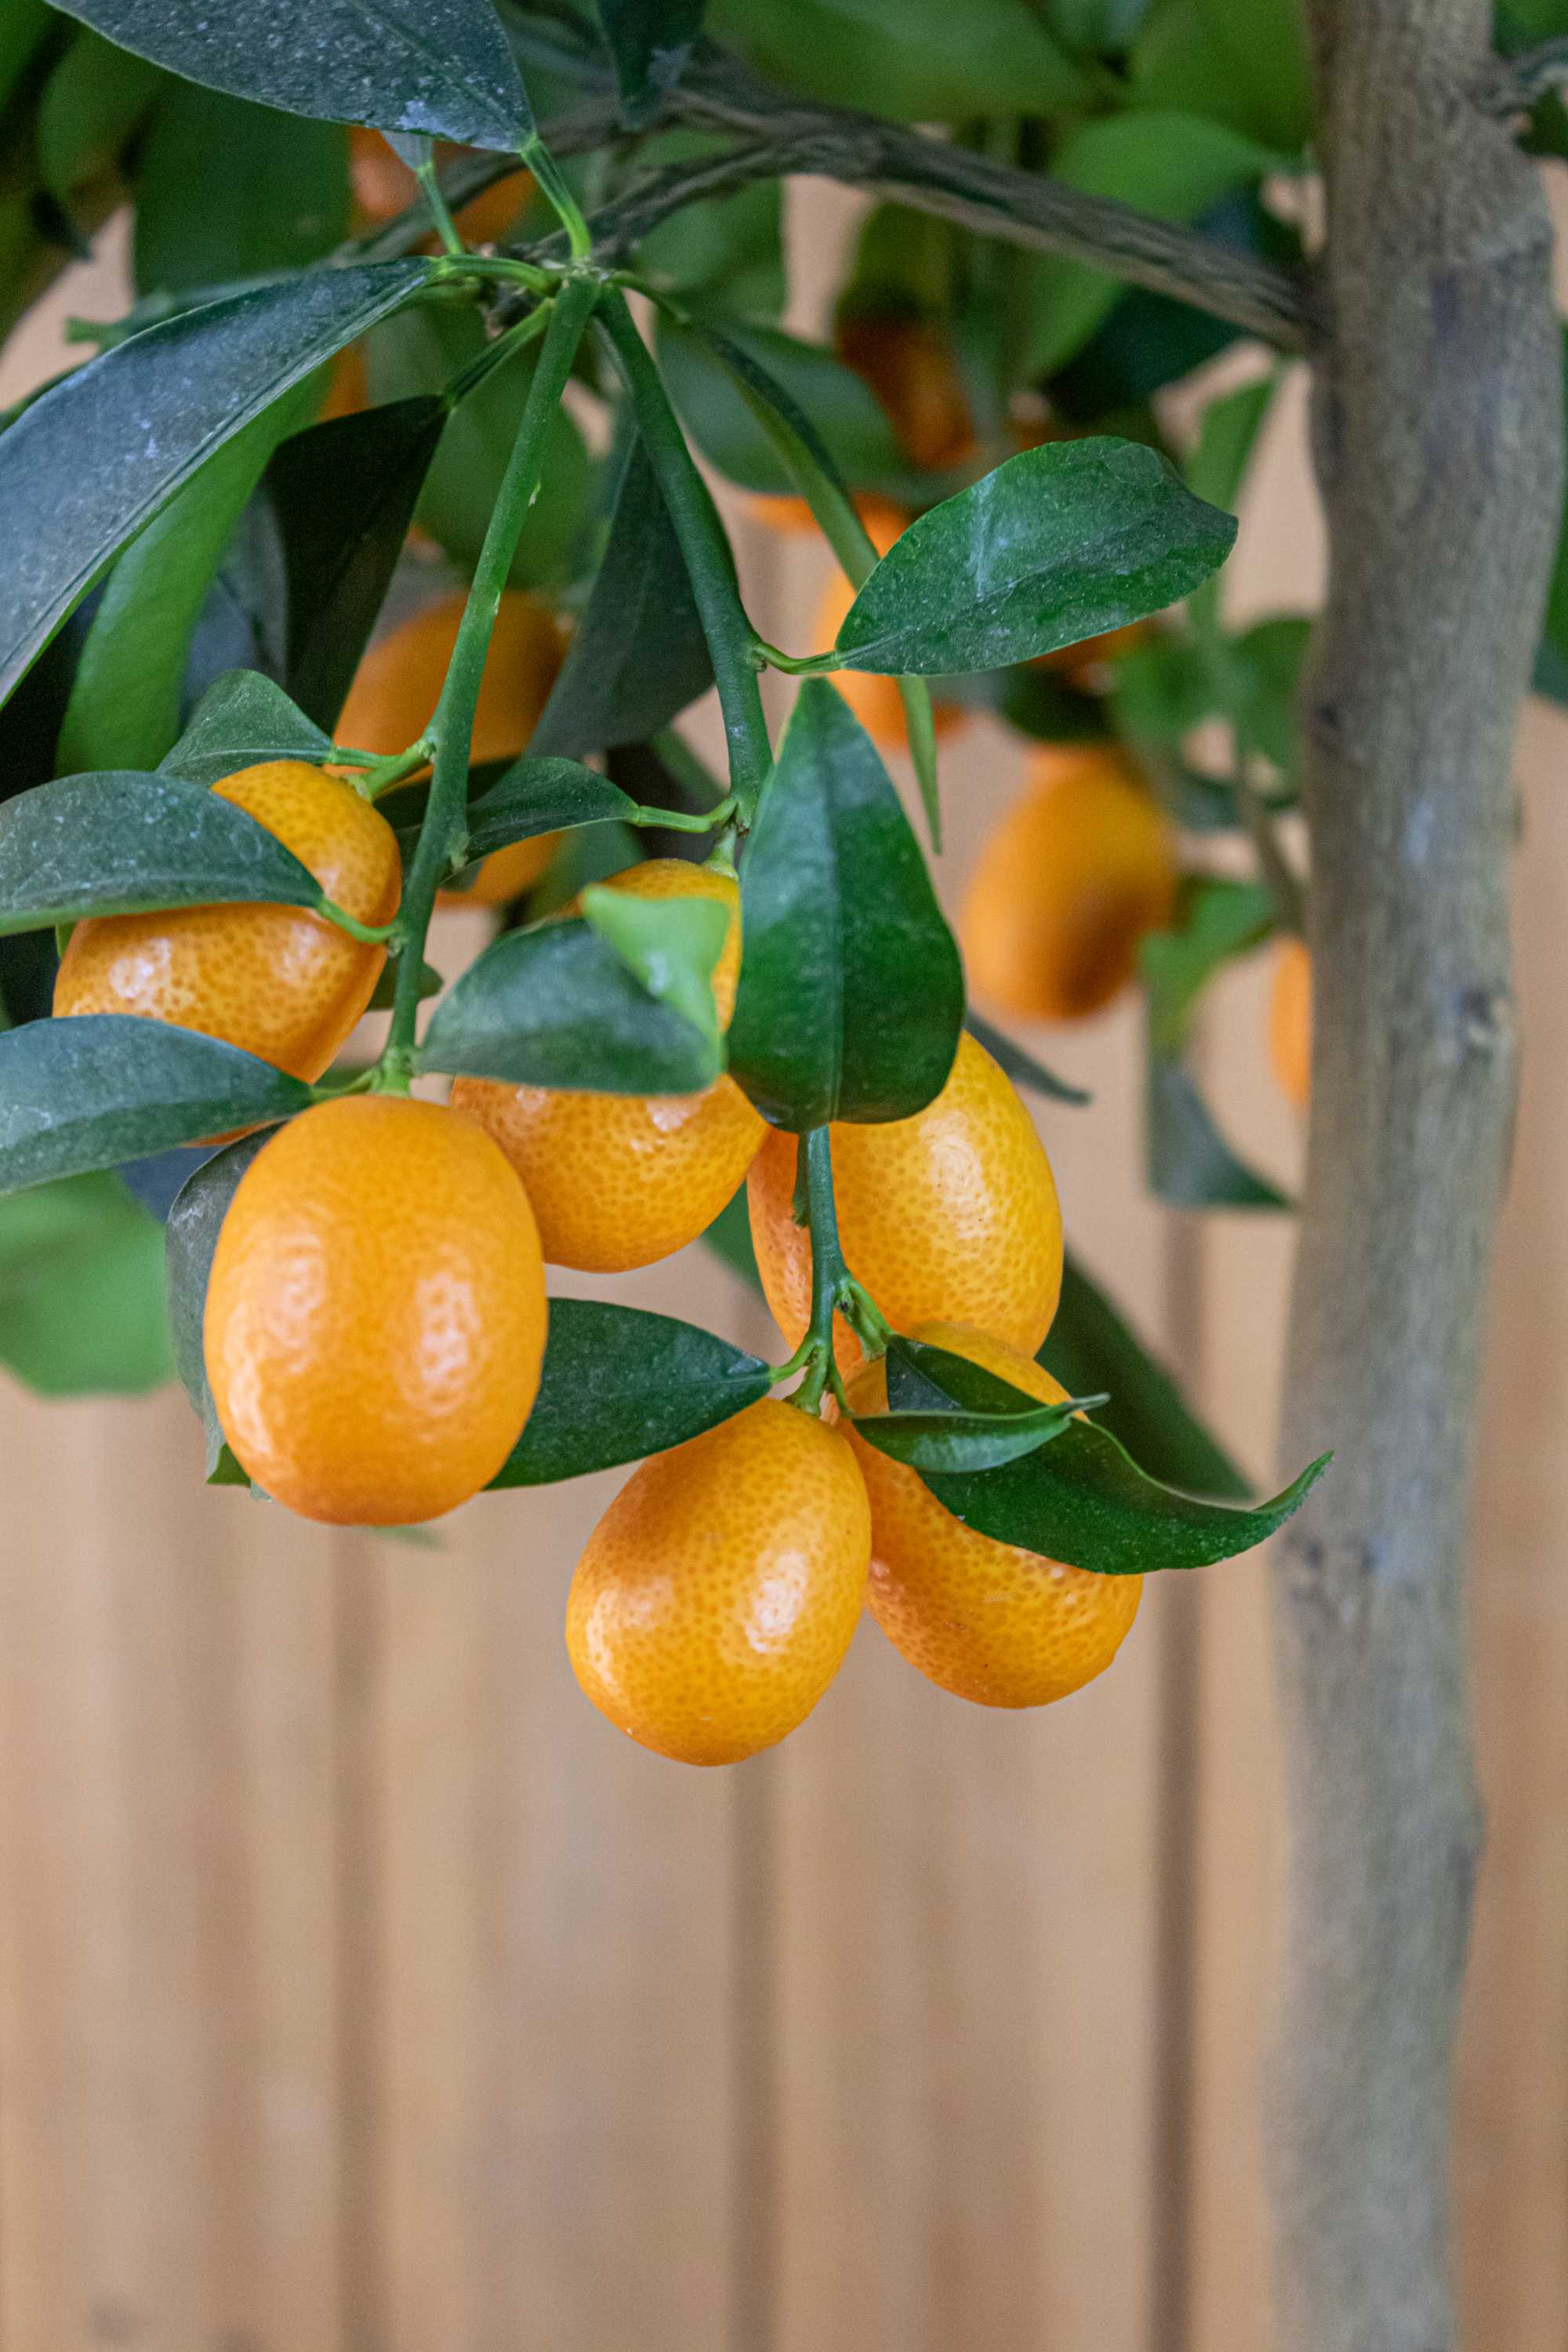 Kumquat 'Grande'  - Citrus japonica - Fortunella margarita